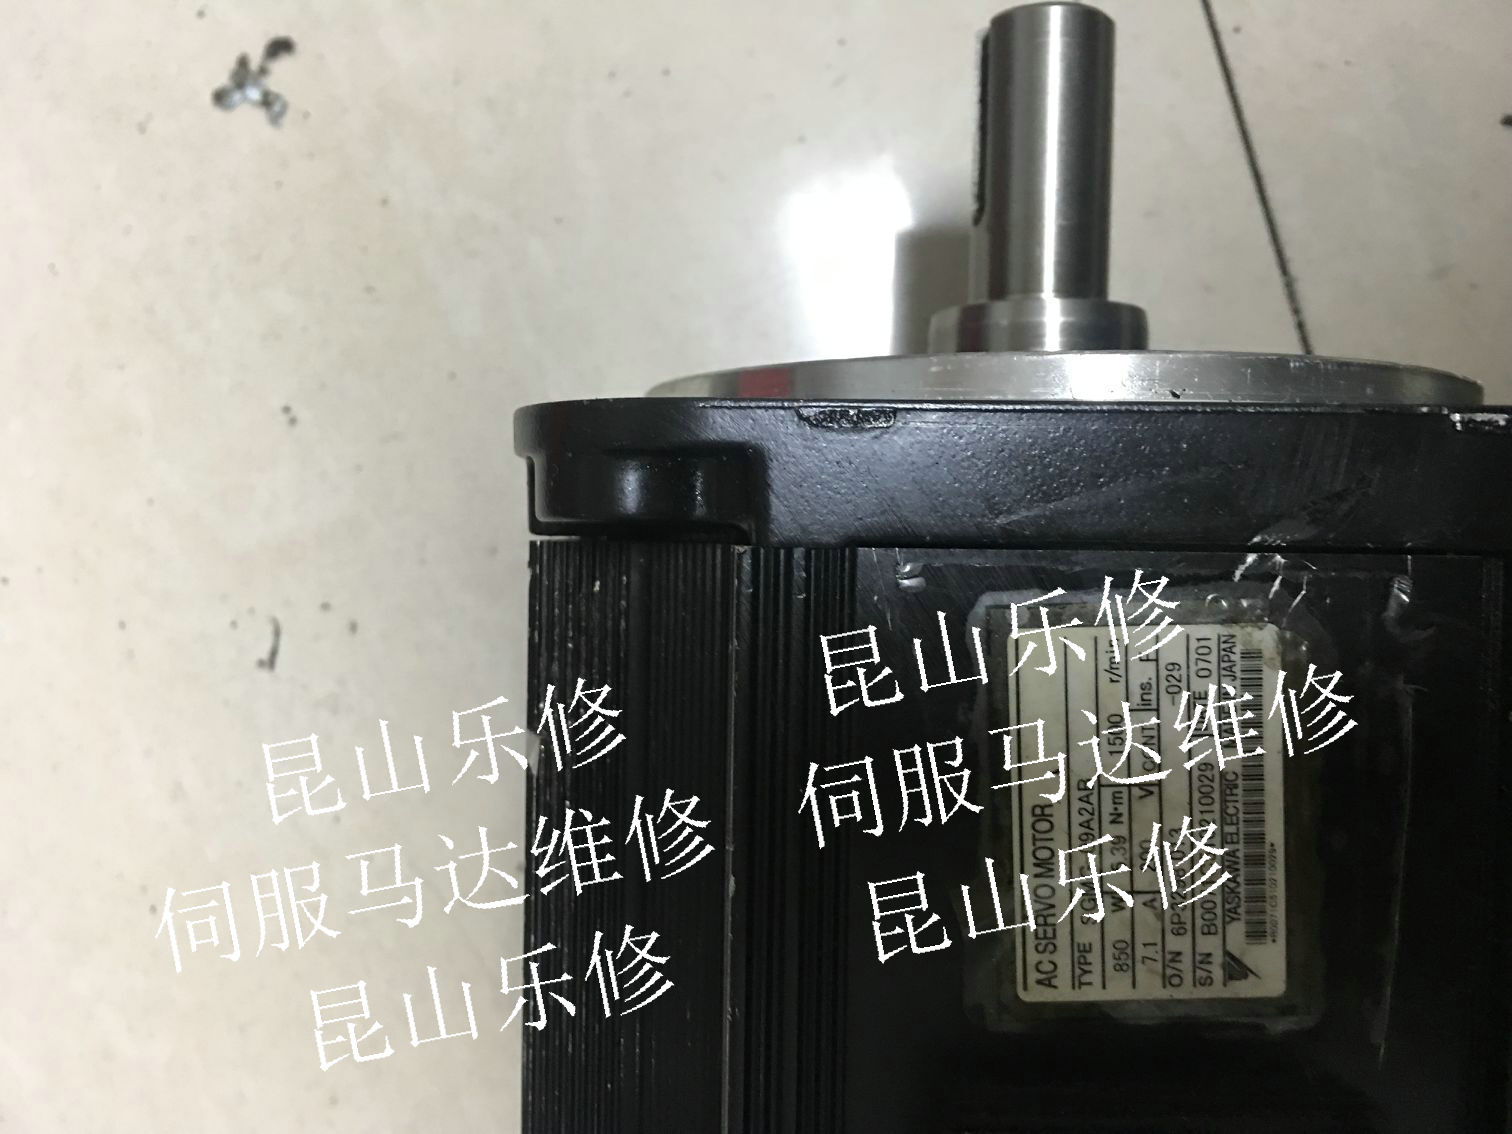 上海松江AB伺服电机维修MPL-B4560F-SJ72AA维修刹车更换轴承调试原点